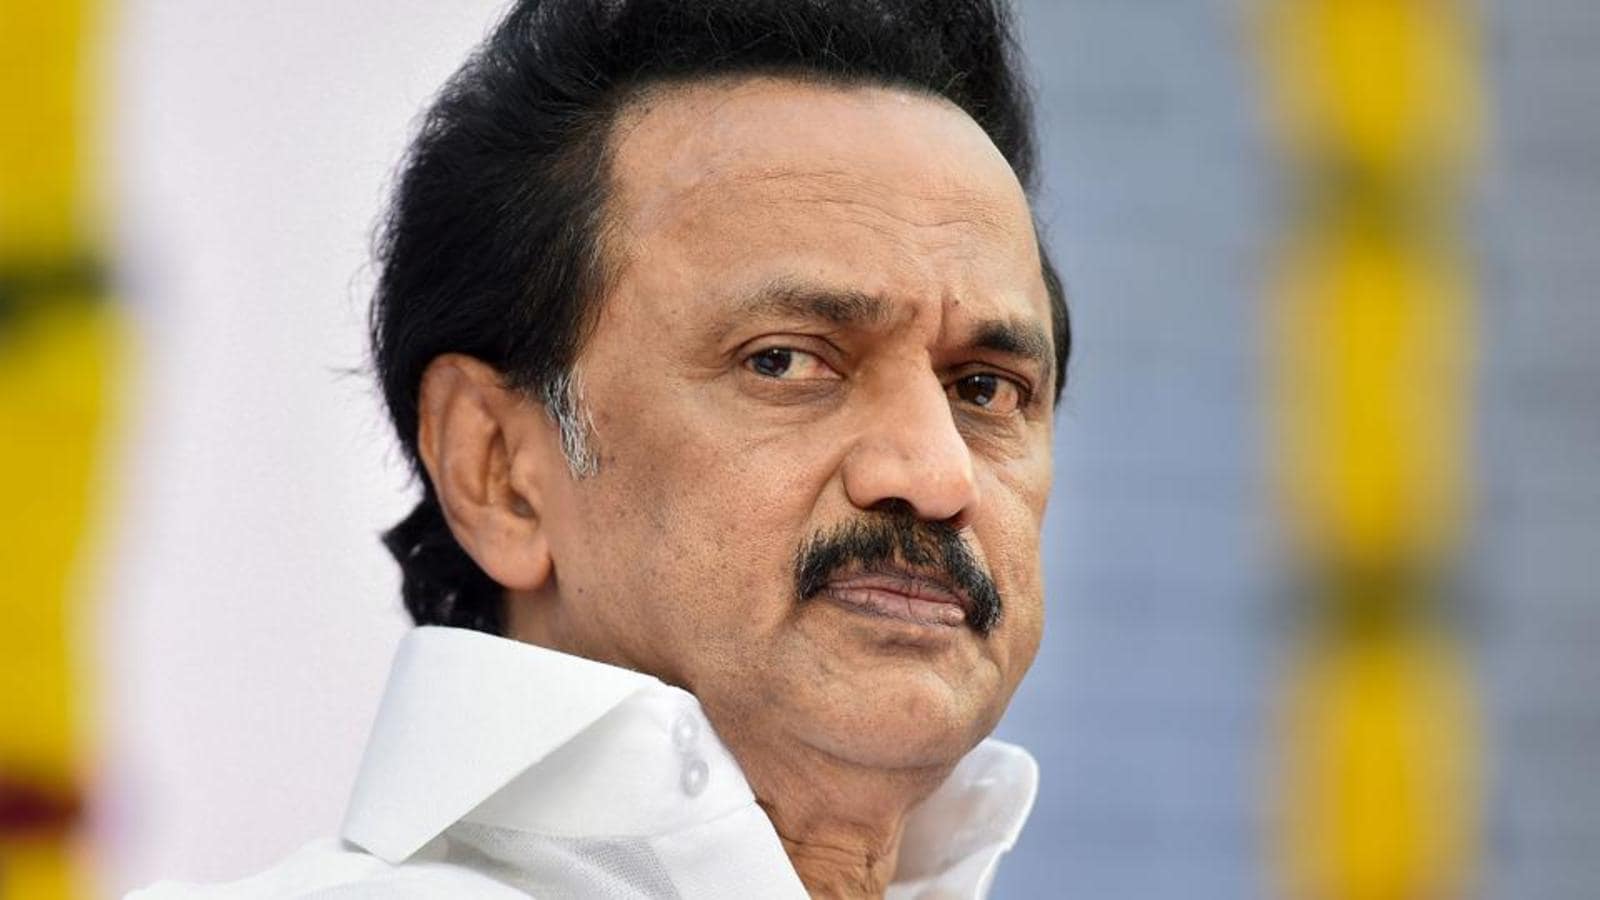 Stalin mengatakan dia akan mengakhiri game online di Tamil Nadu